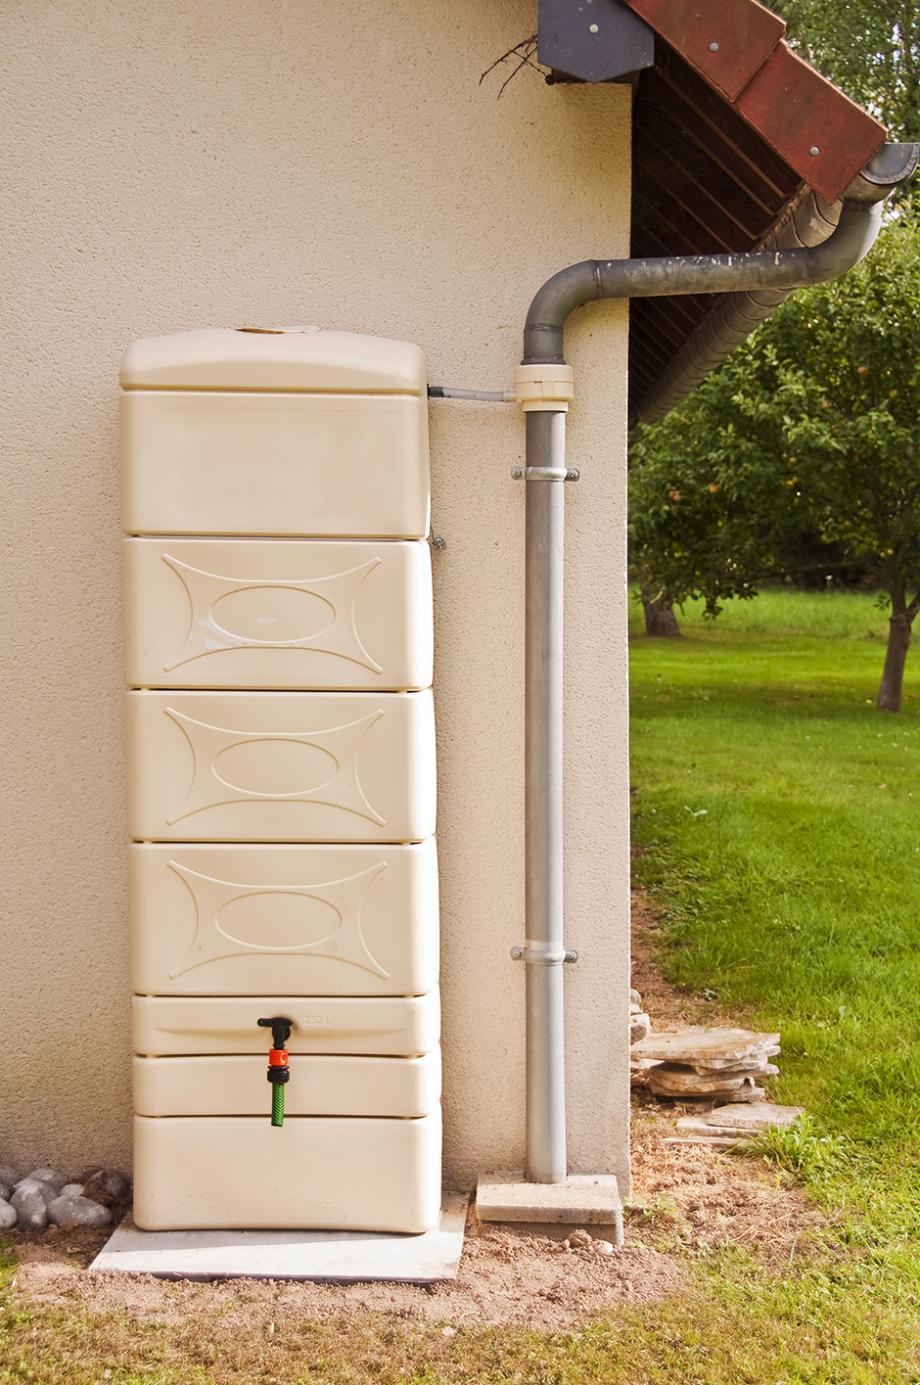 Comment installer un récupérateur d'eau de pluie - Gamm vert